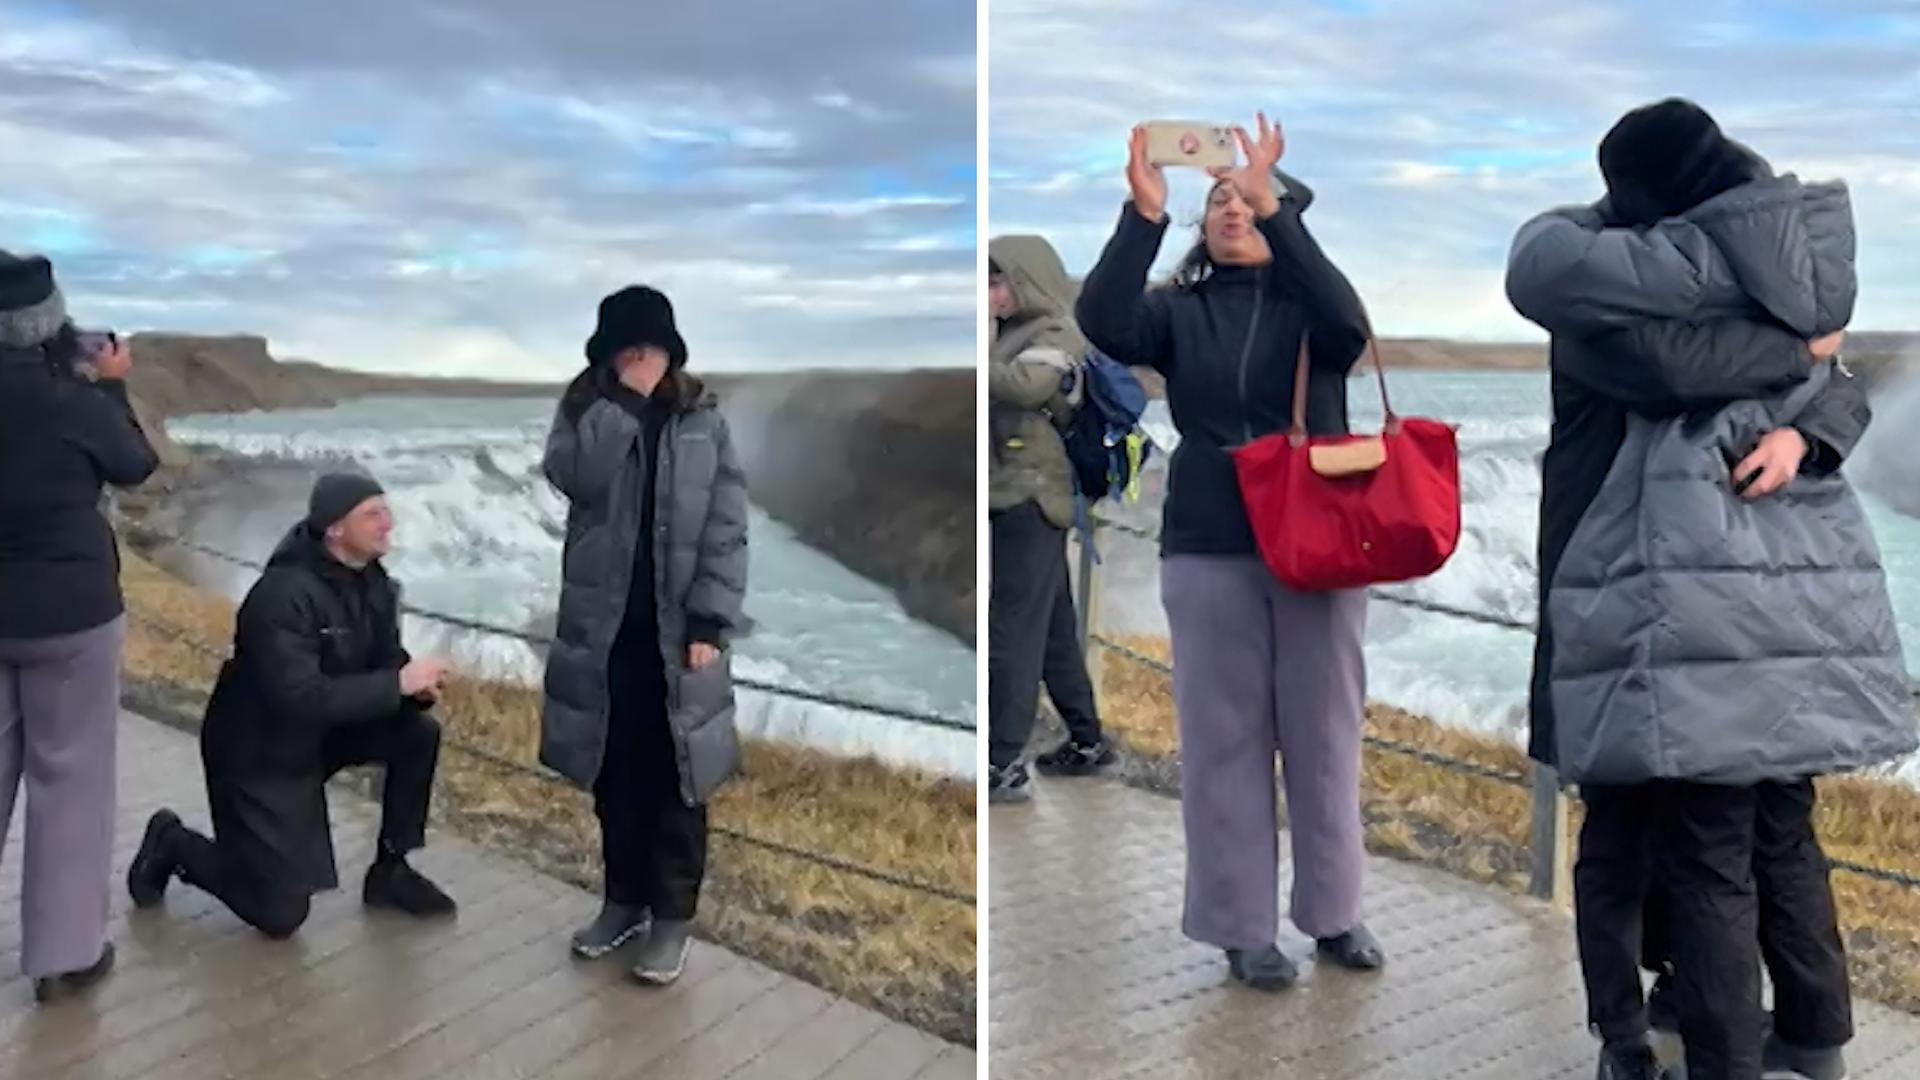 Touristin crasht Heiratsantrag - und merkt es nicht einmal! Sie stolpert sogar über seine Beine